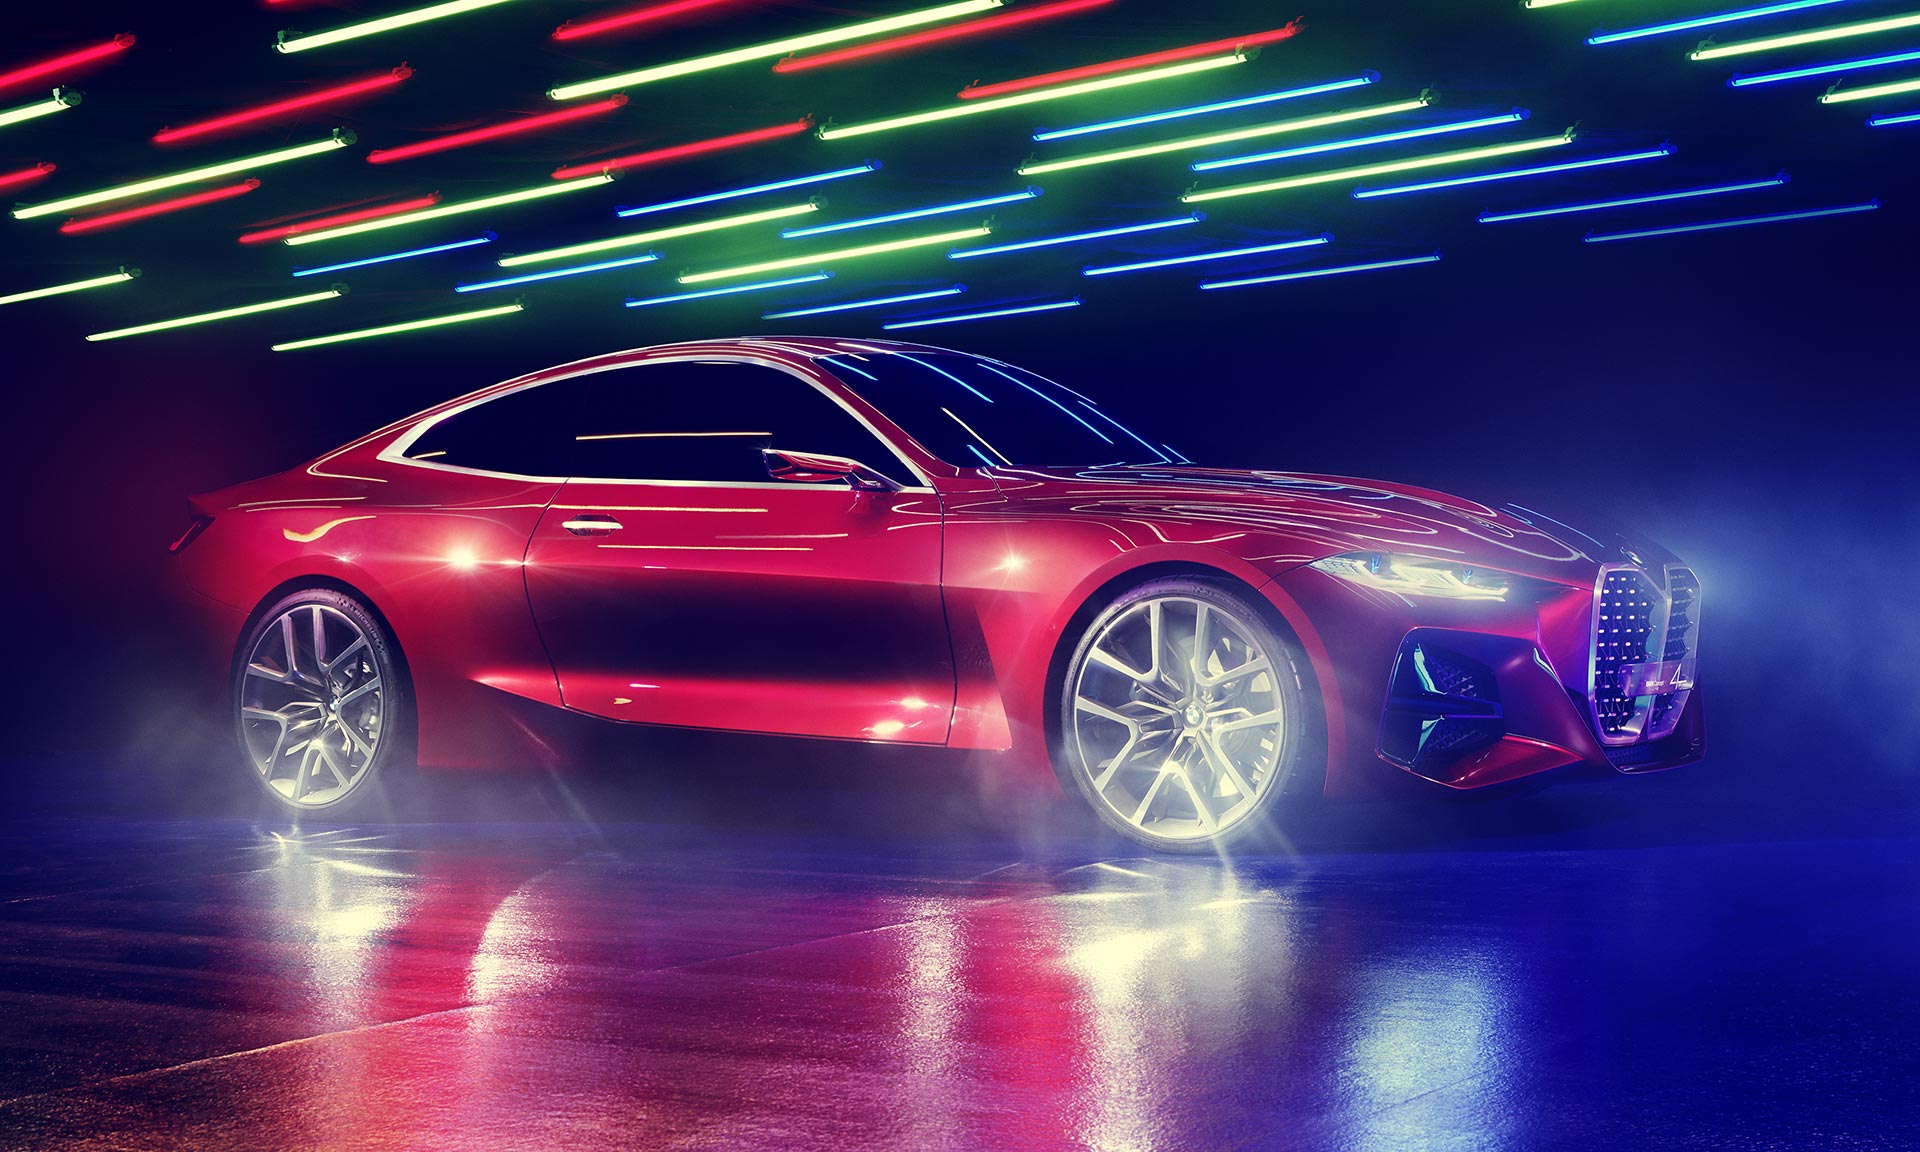 BMW ukázalo stylový Concept 4 naznačující brzký příchod nového kupé